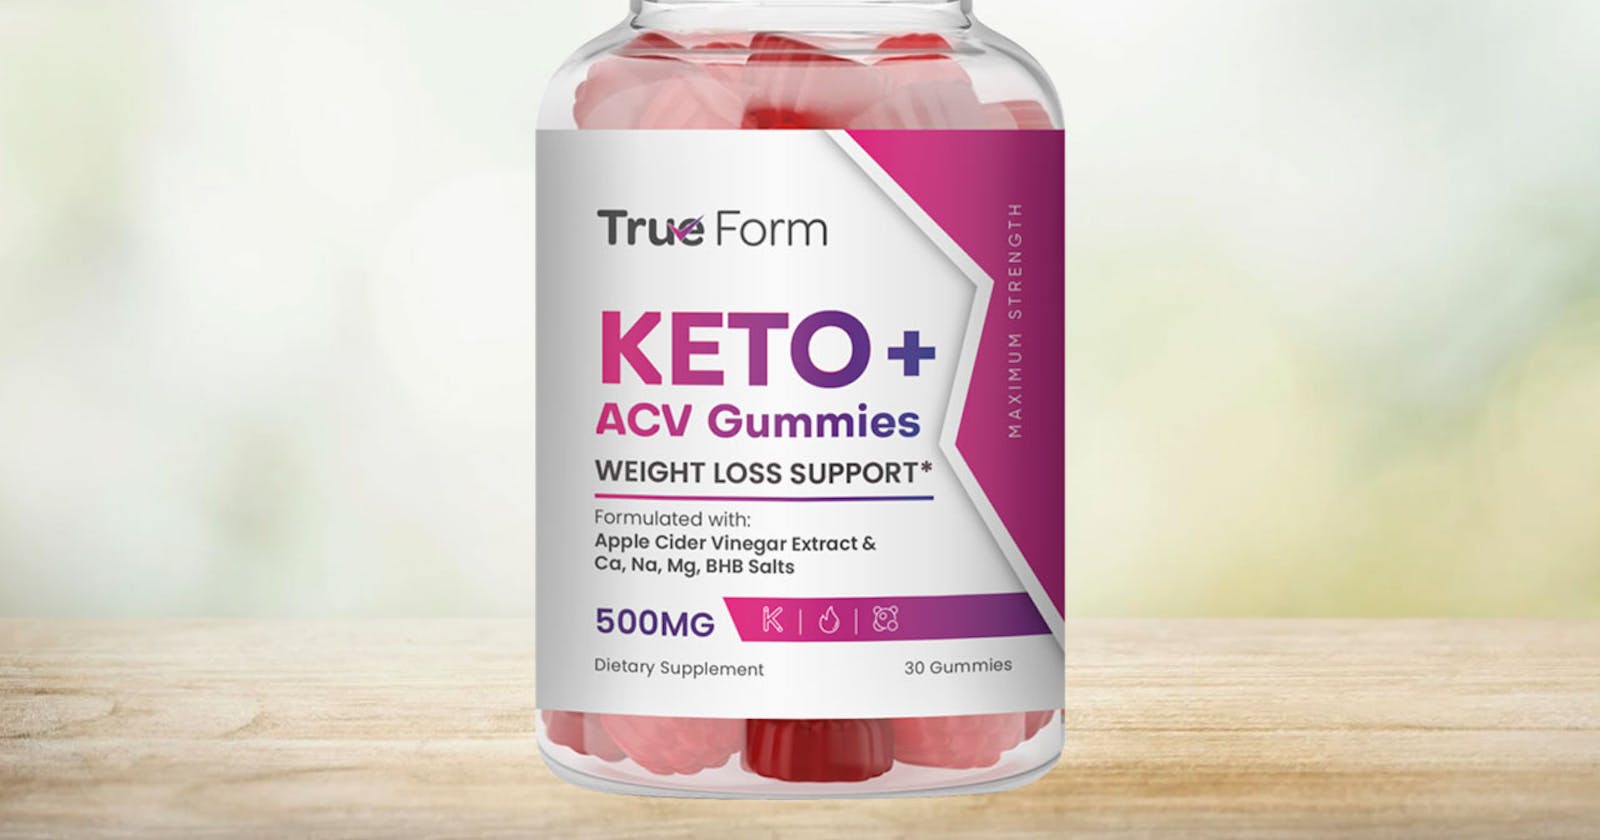 True Form Keto Gummies